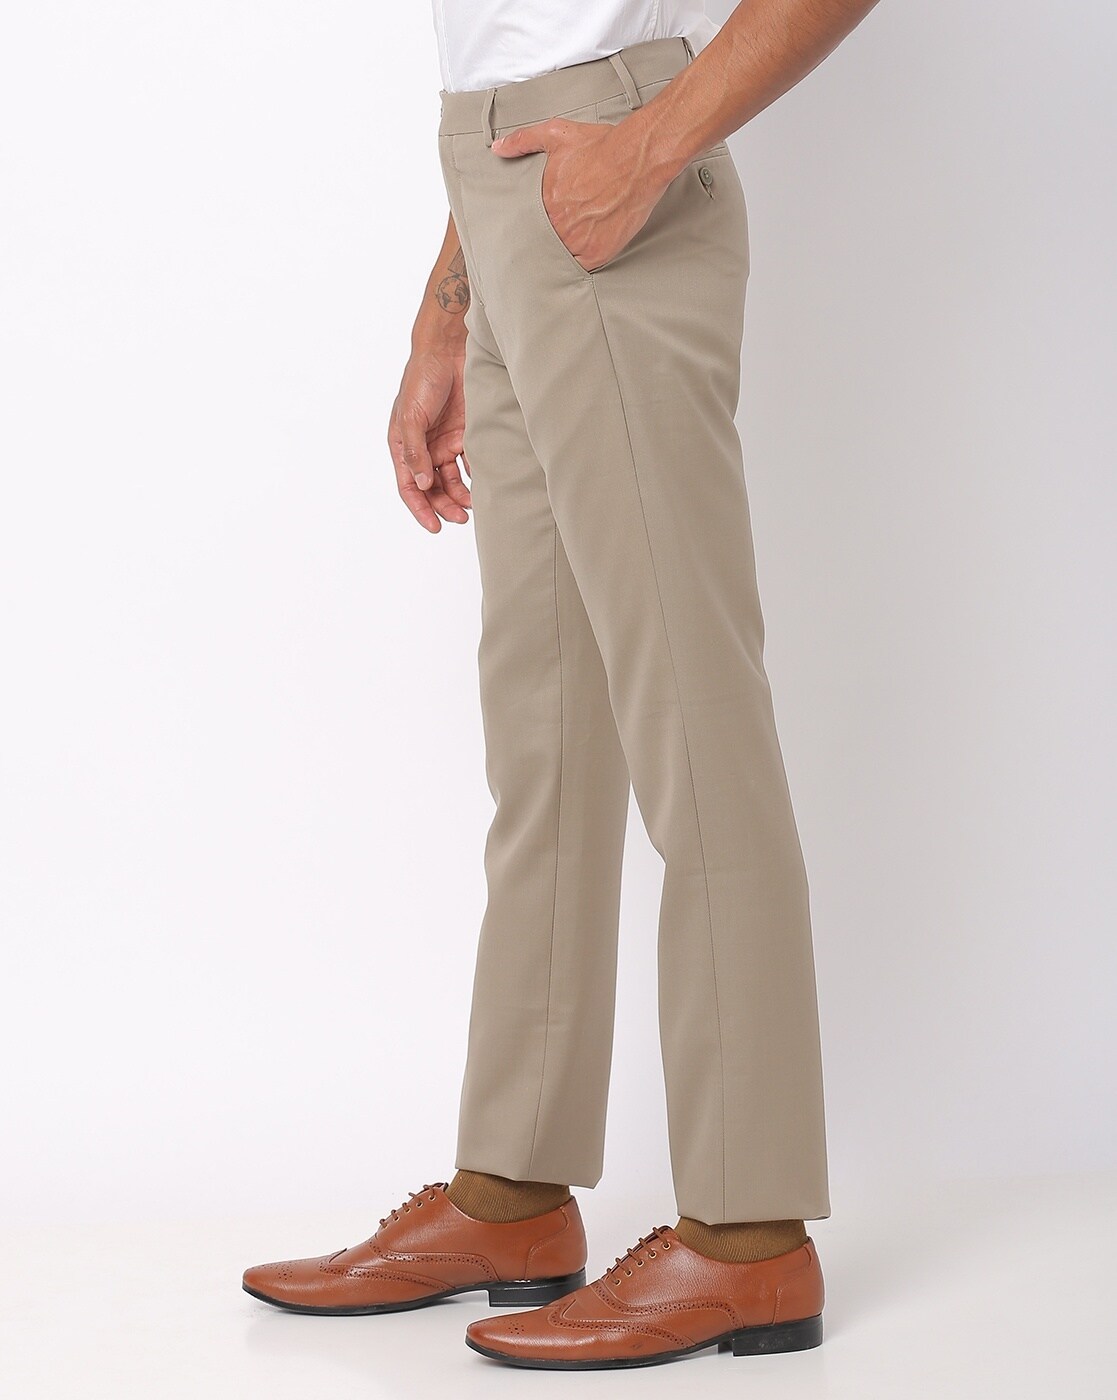 Buy Only Vimal Slim Fit Mens Dark Blue Trousers online  Looksgudin